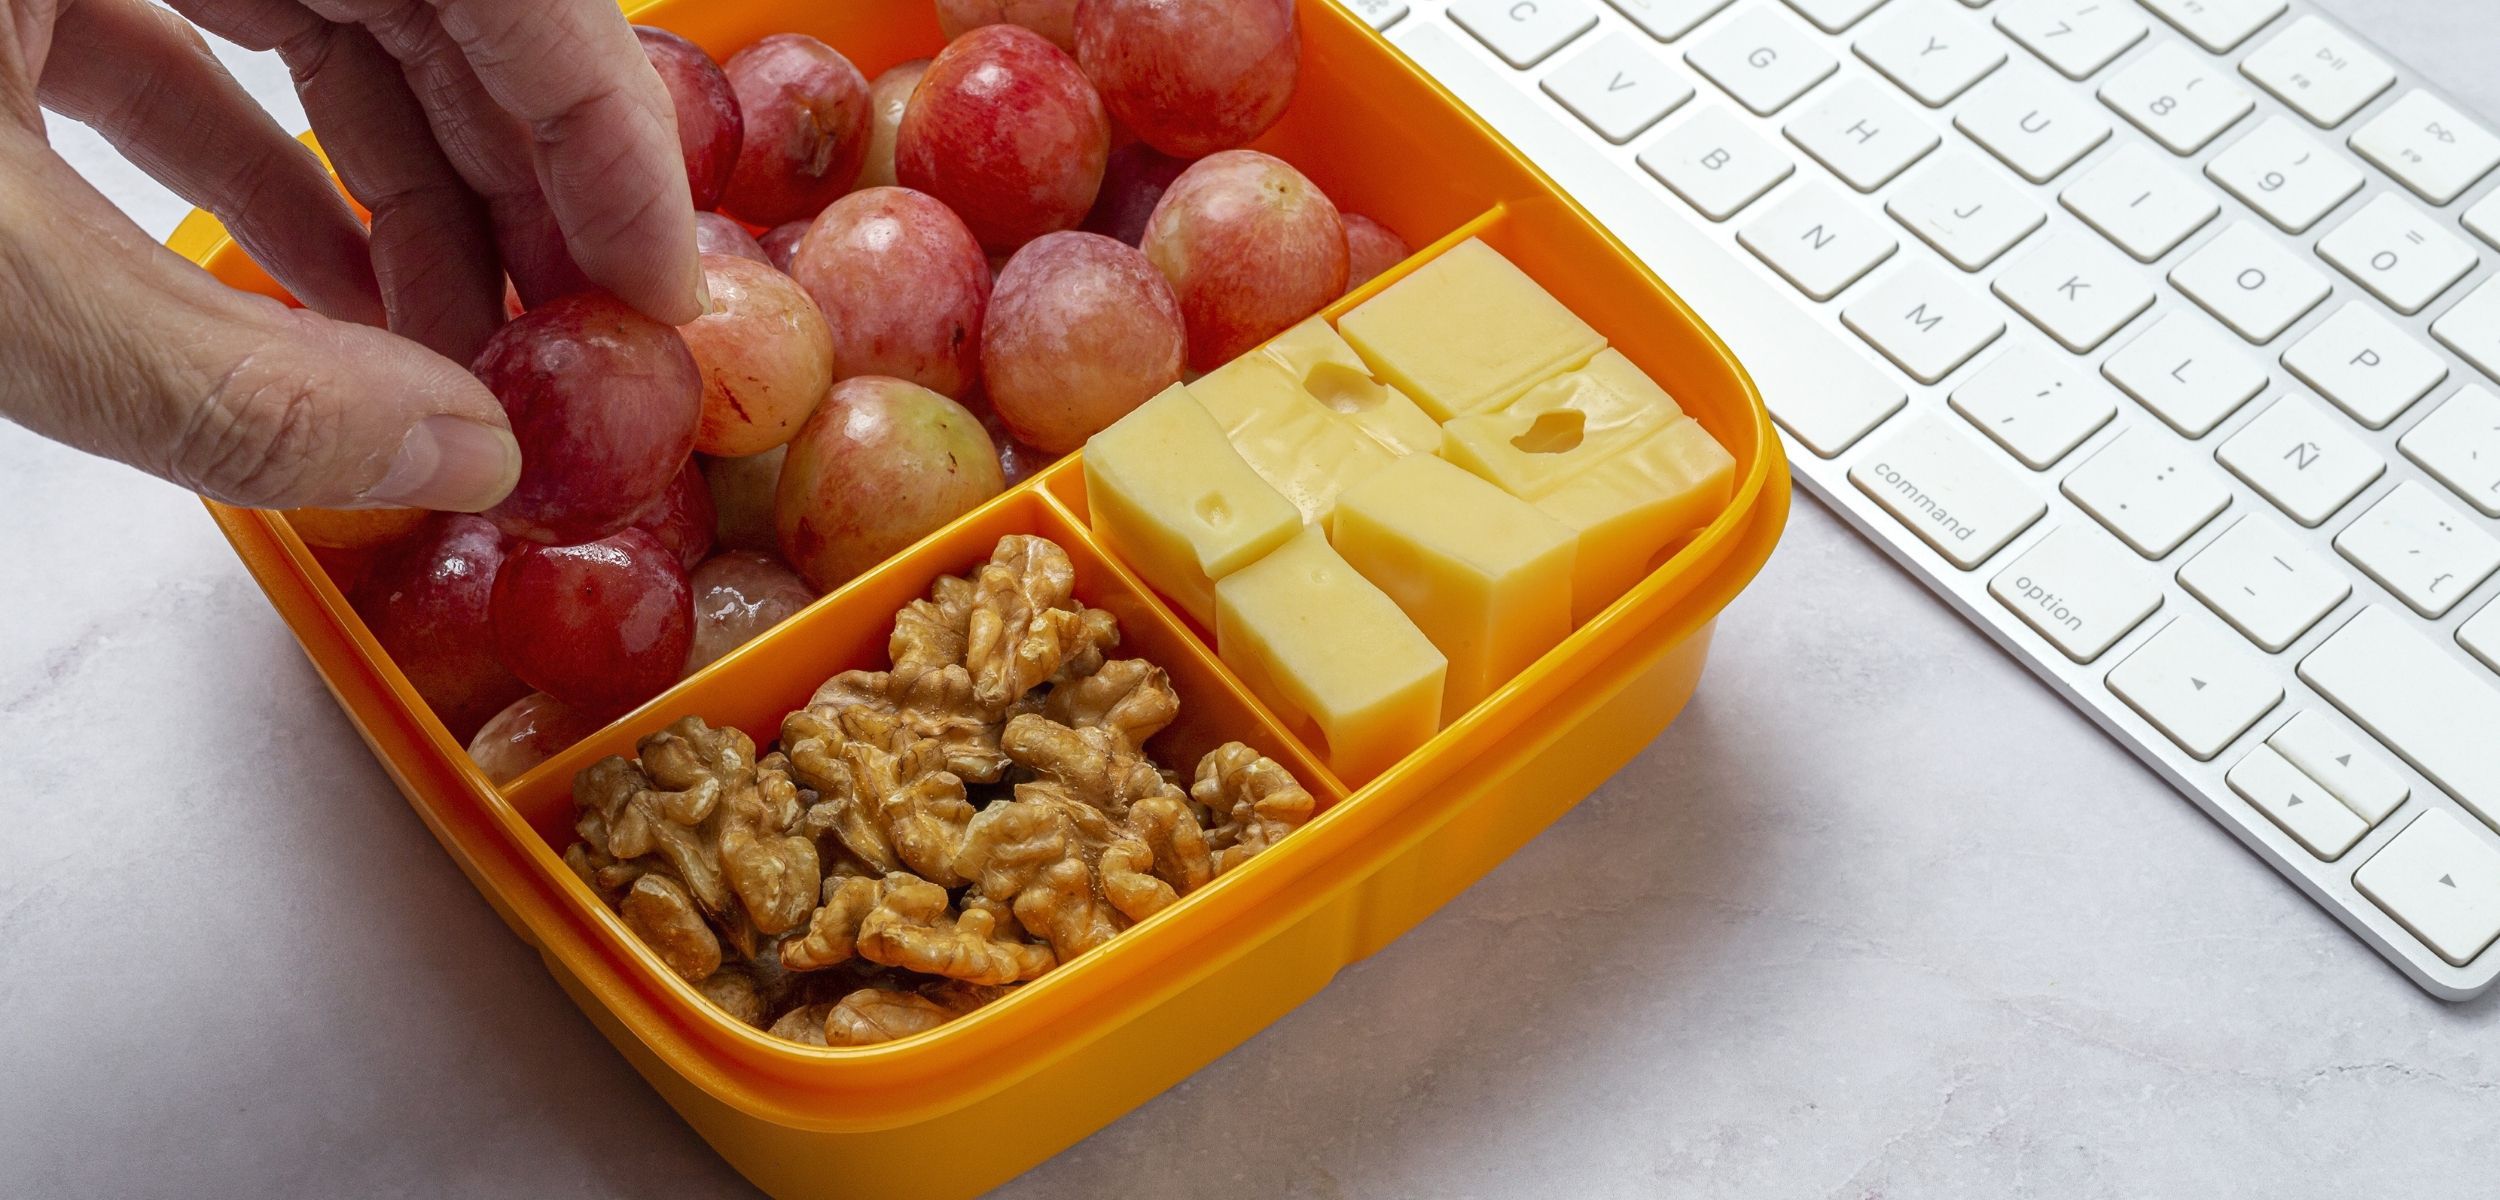 estilozas: Snacks saludables para la oficina